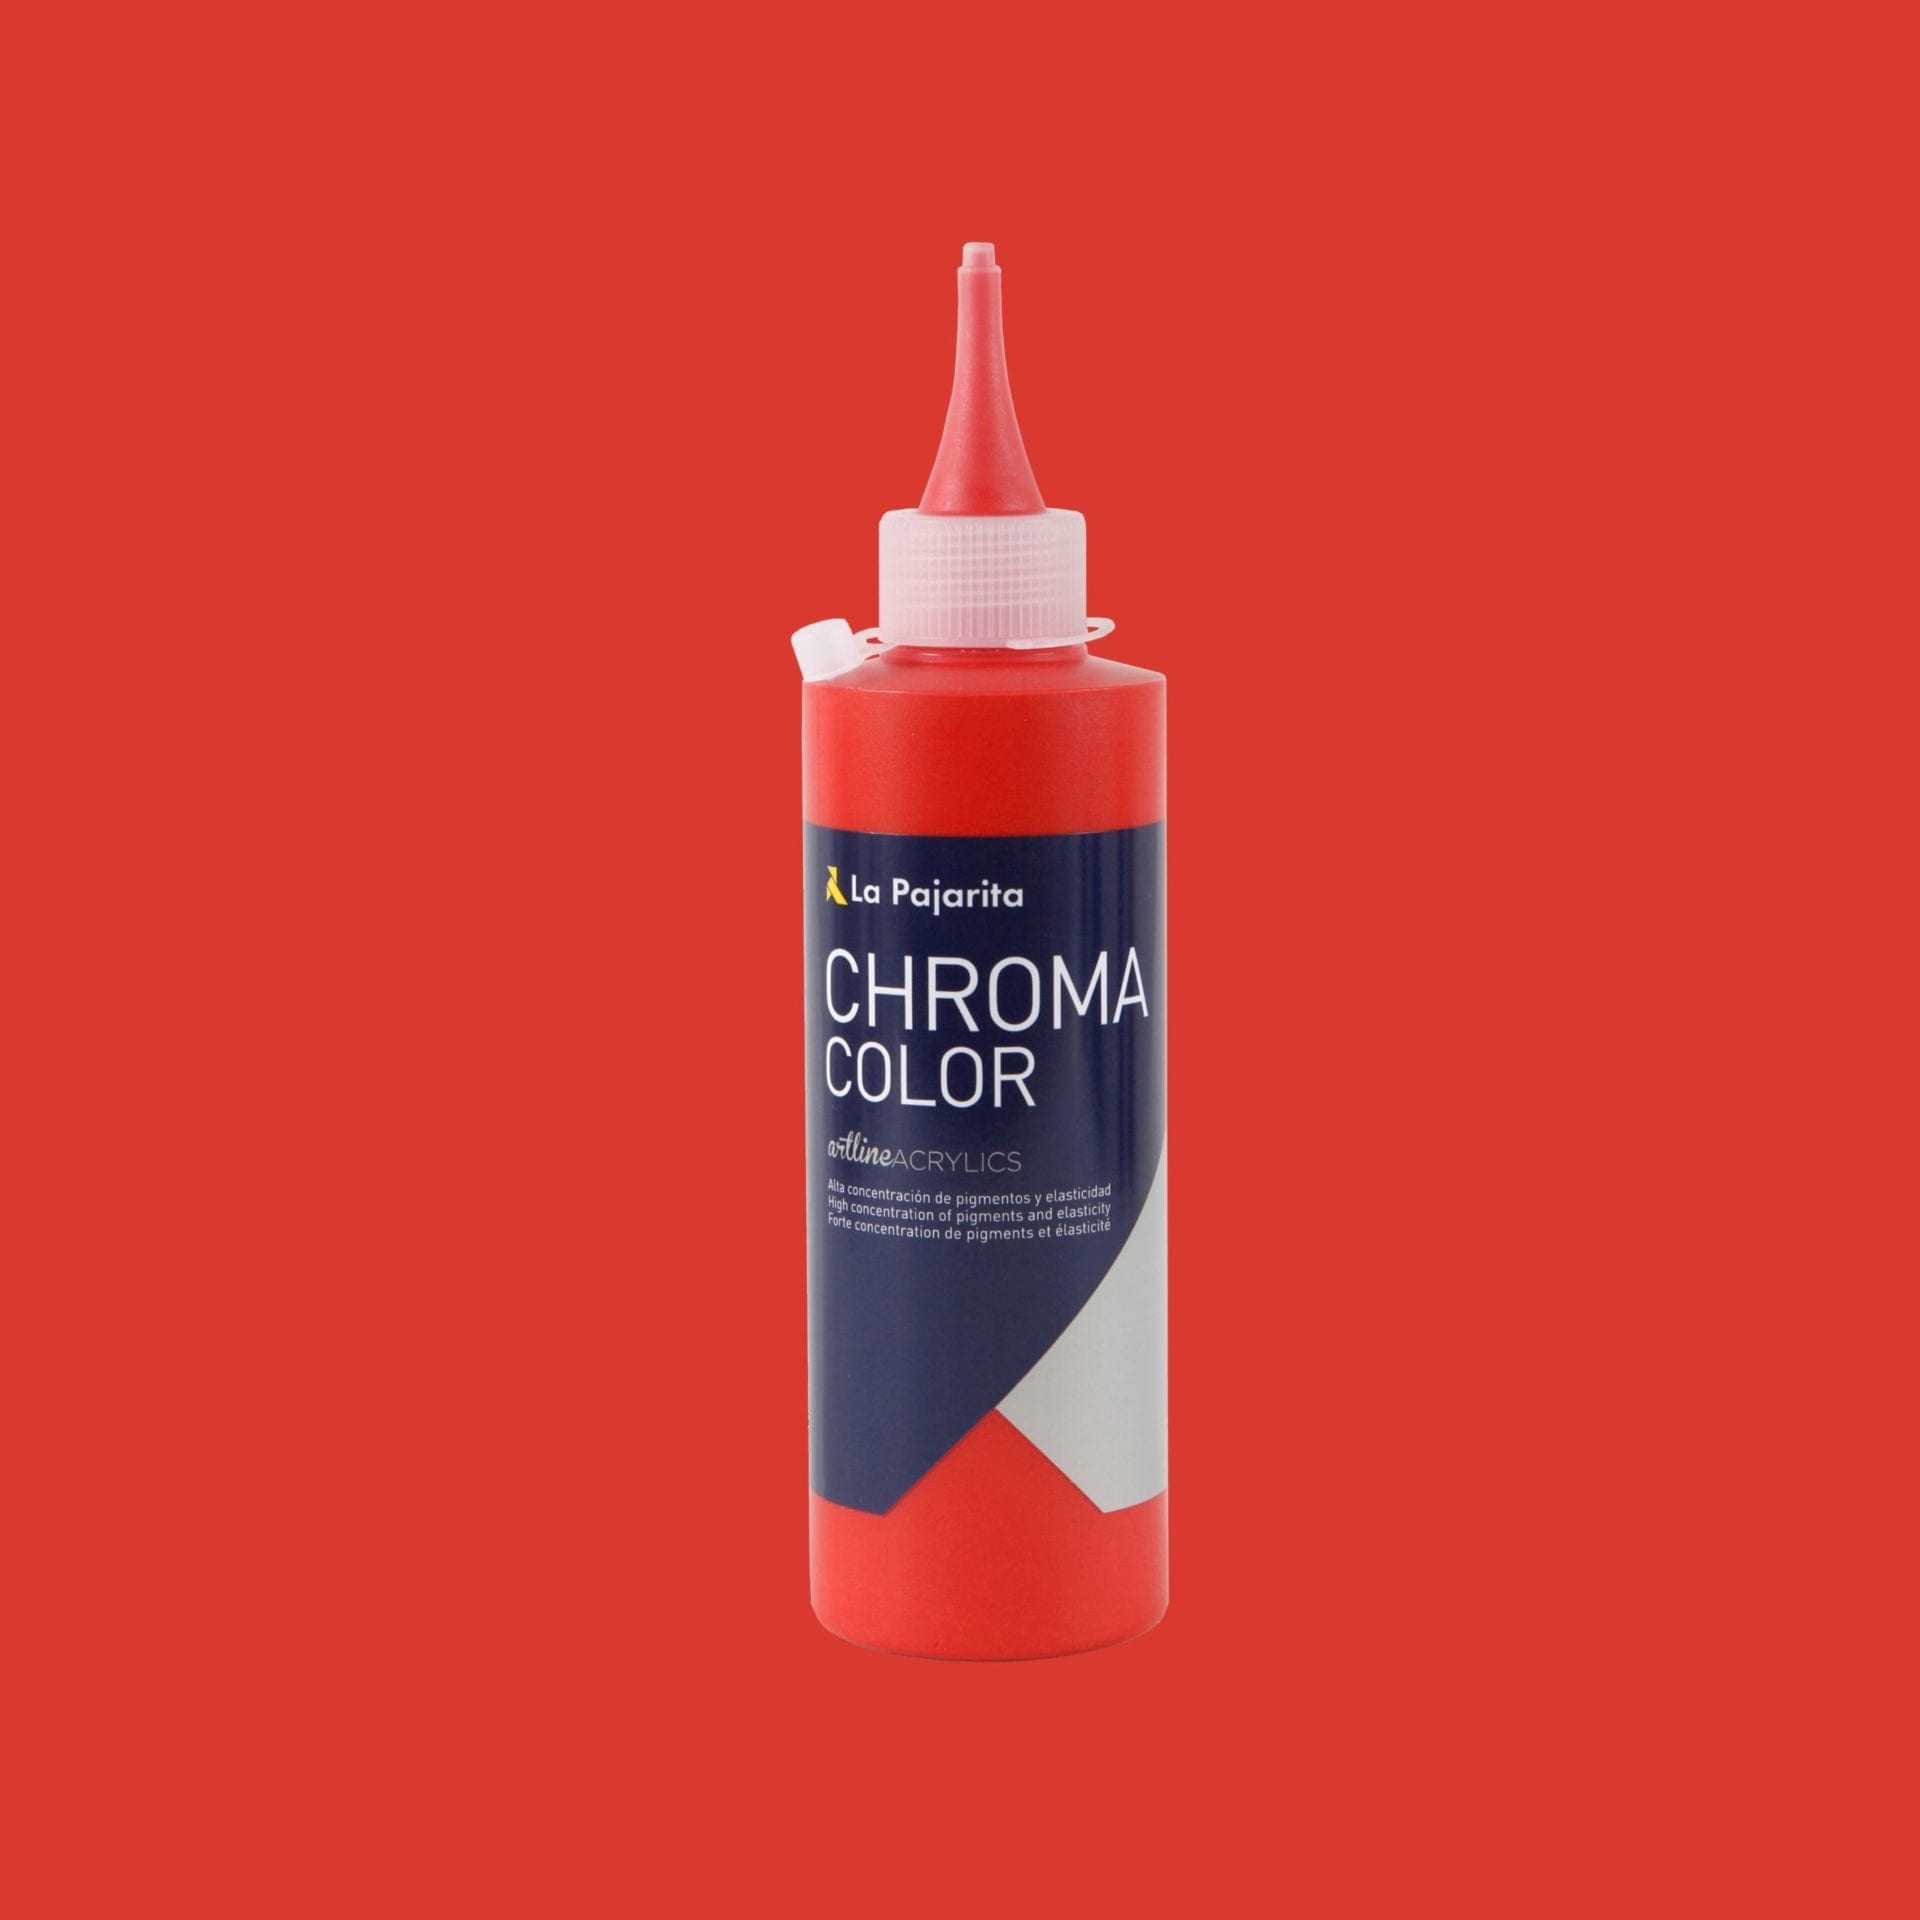 Chroma color cc-06 rosso cadmio medio (tono) - La Pajarita